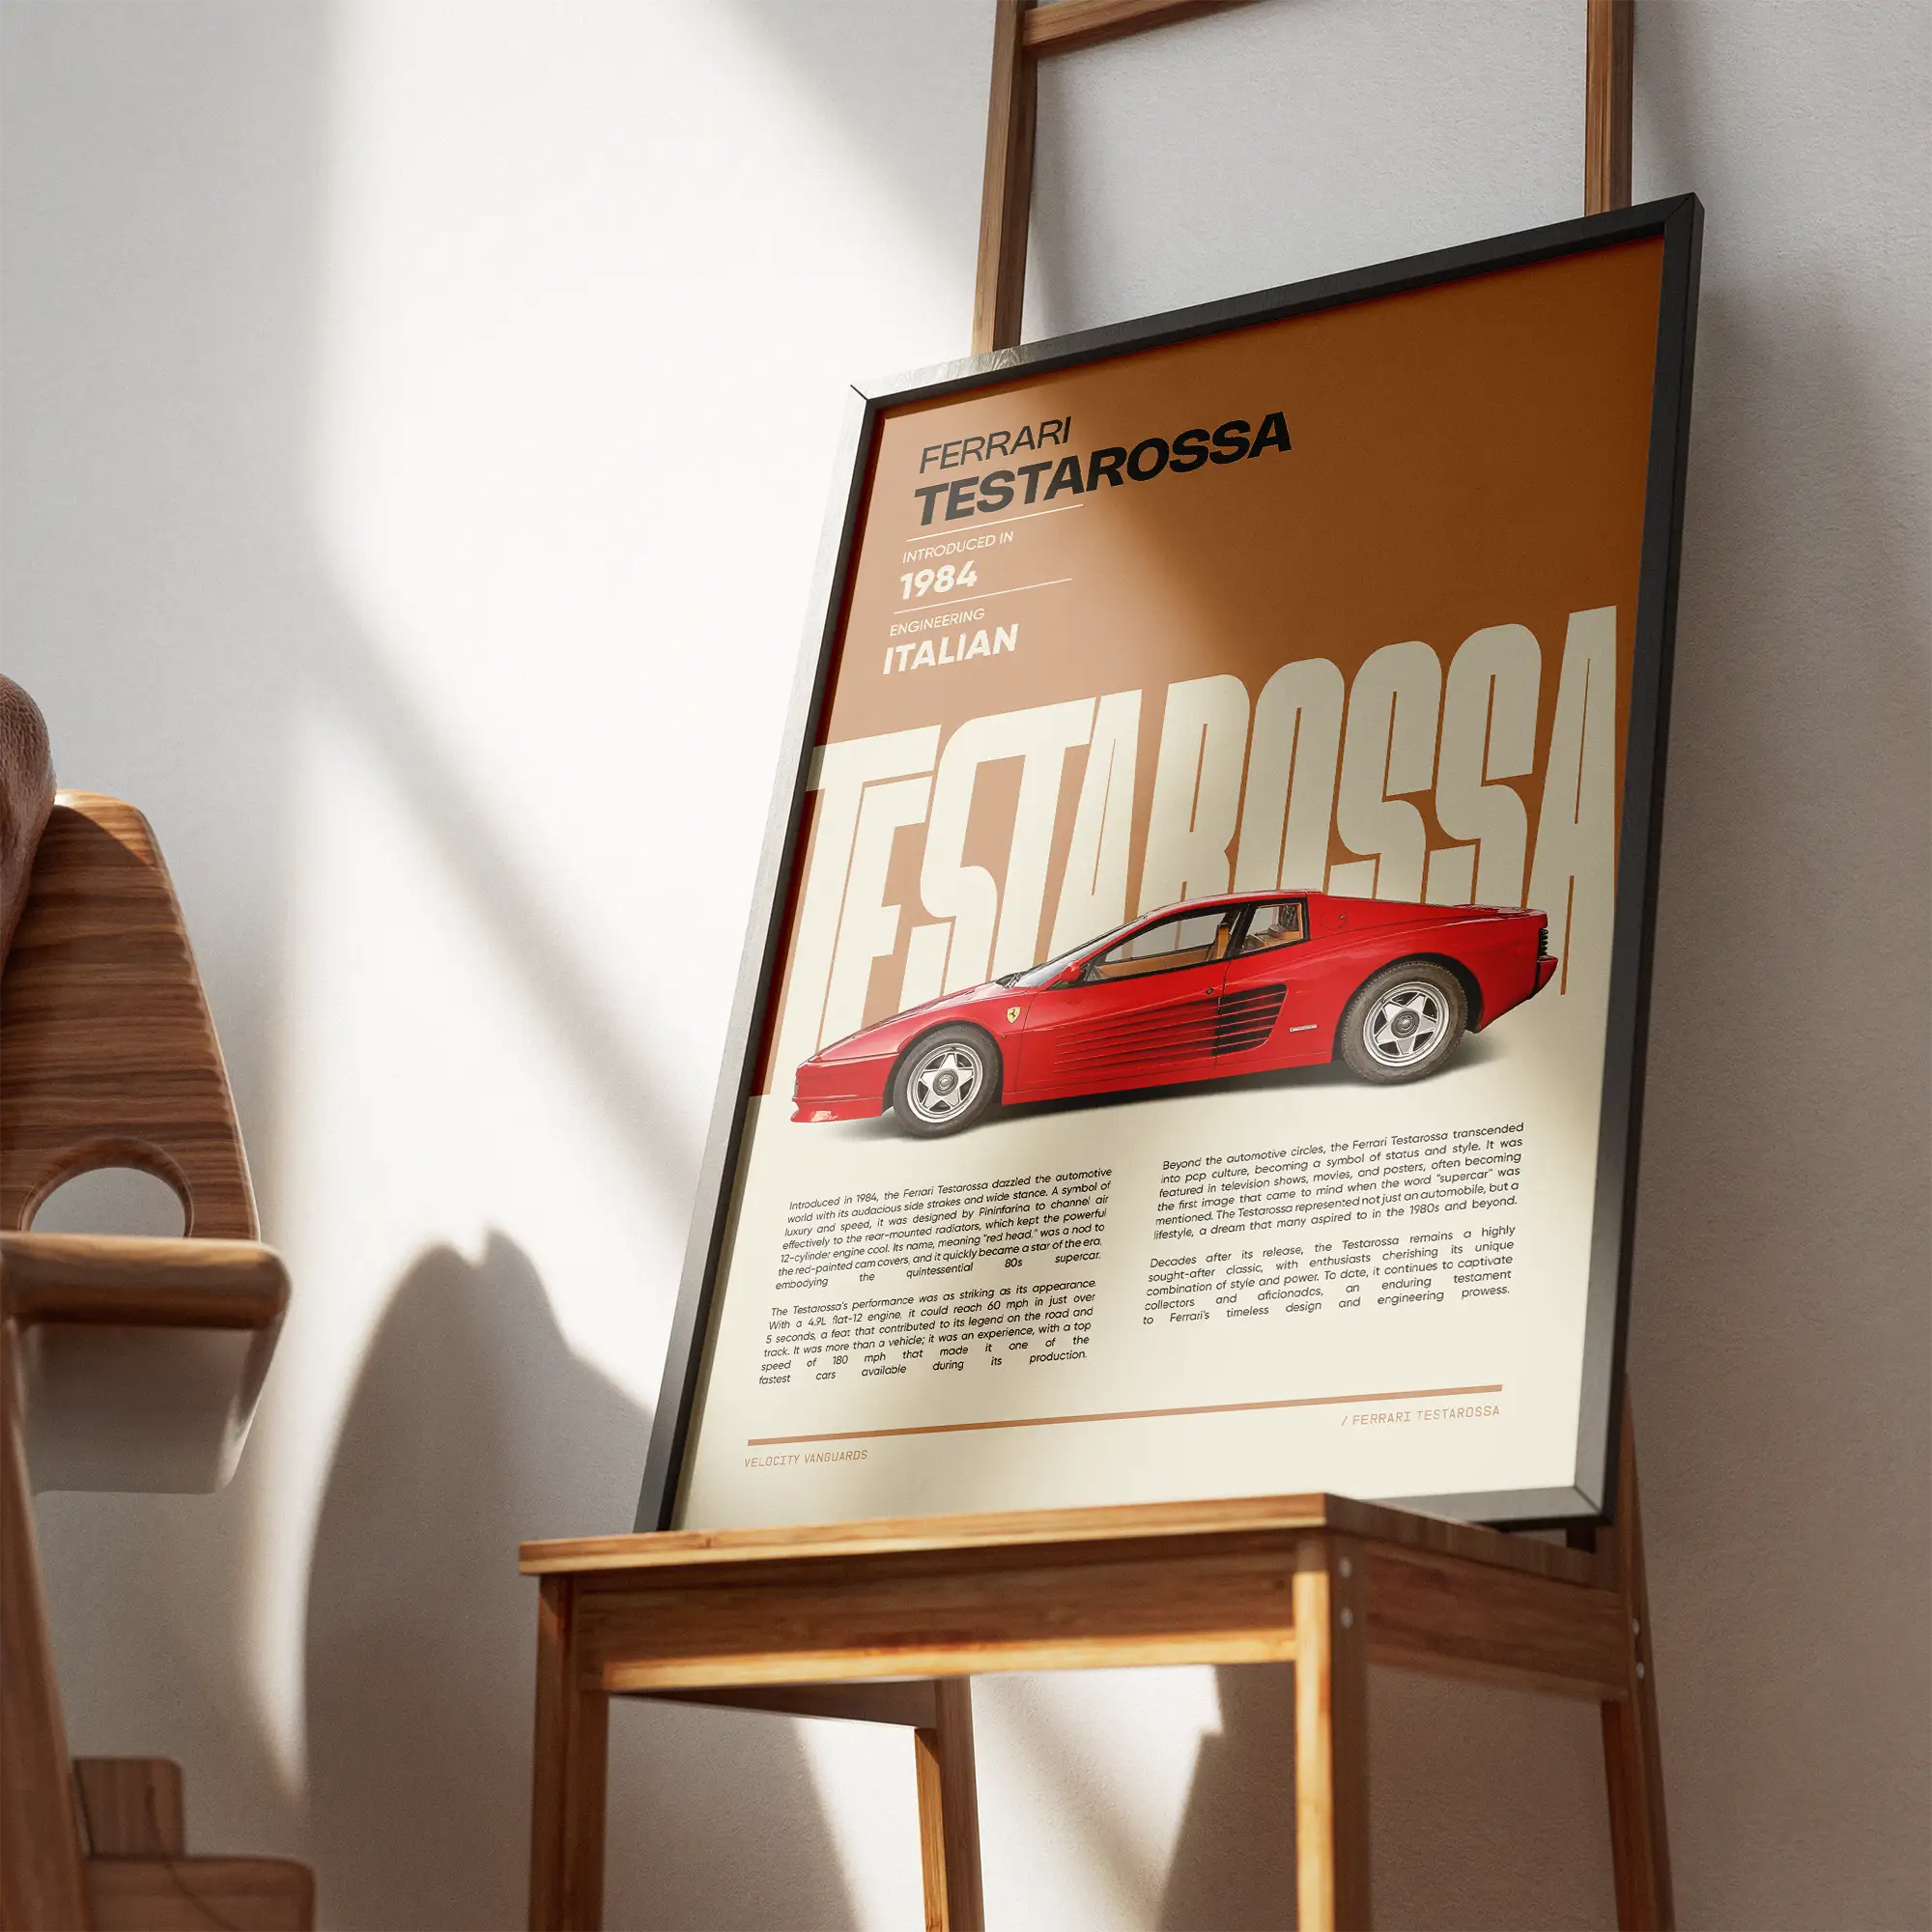 The Ferrari Testarossa